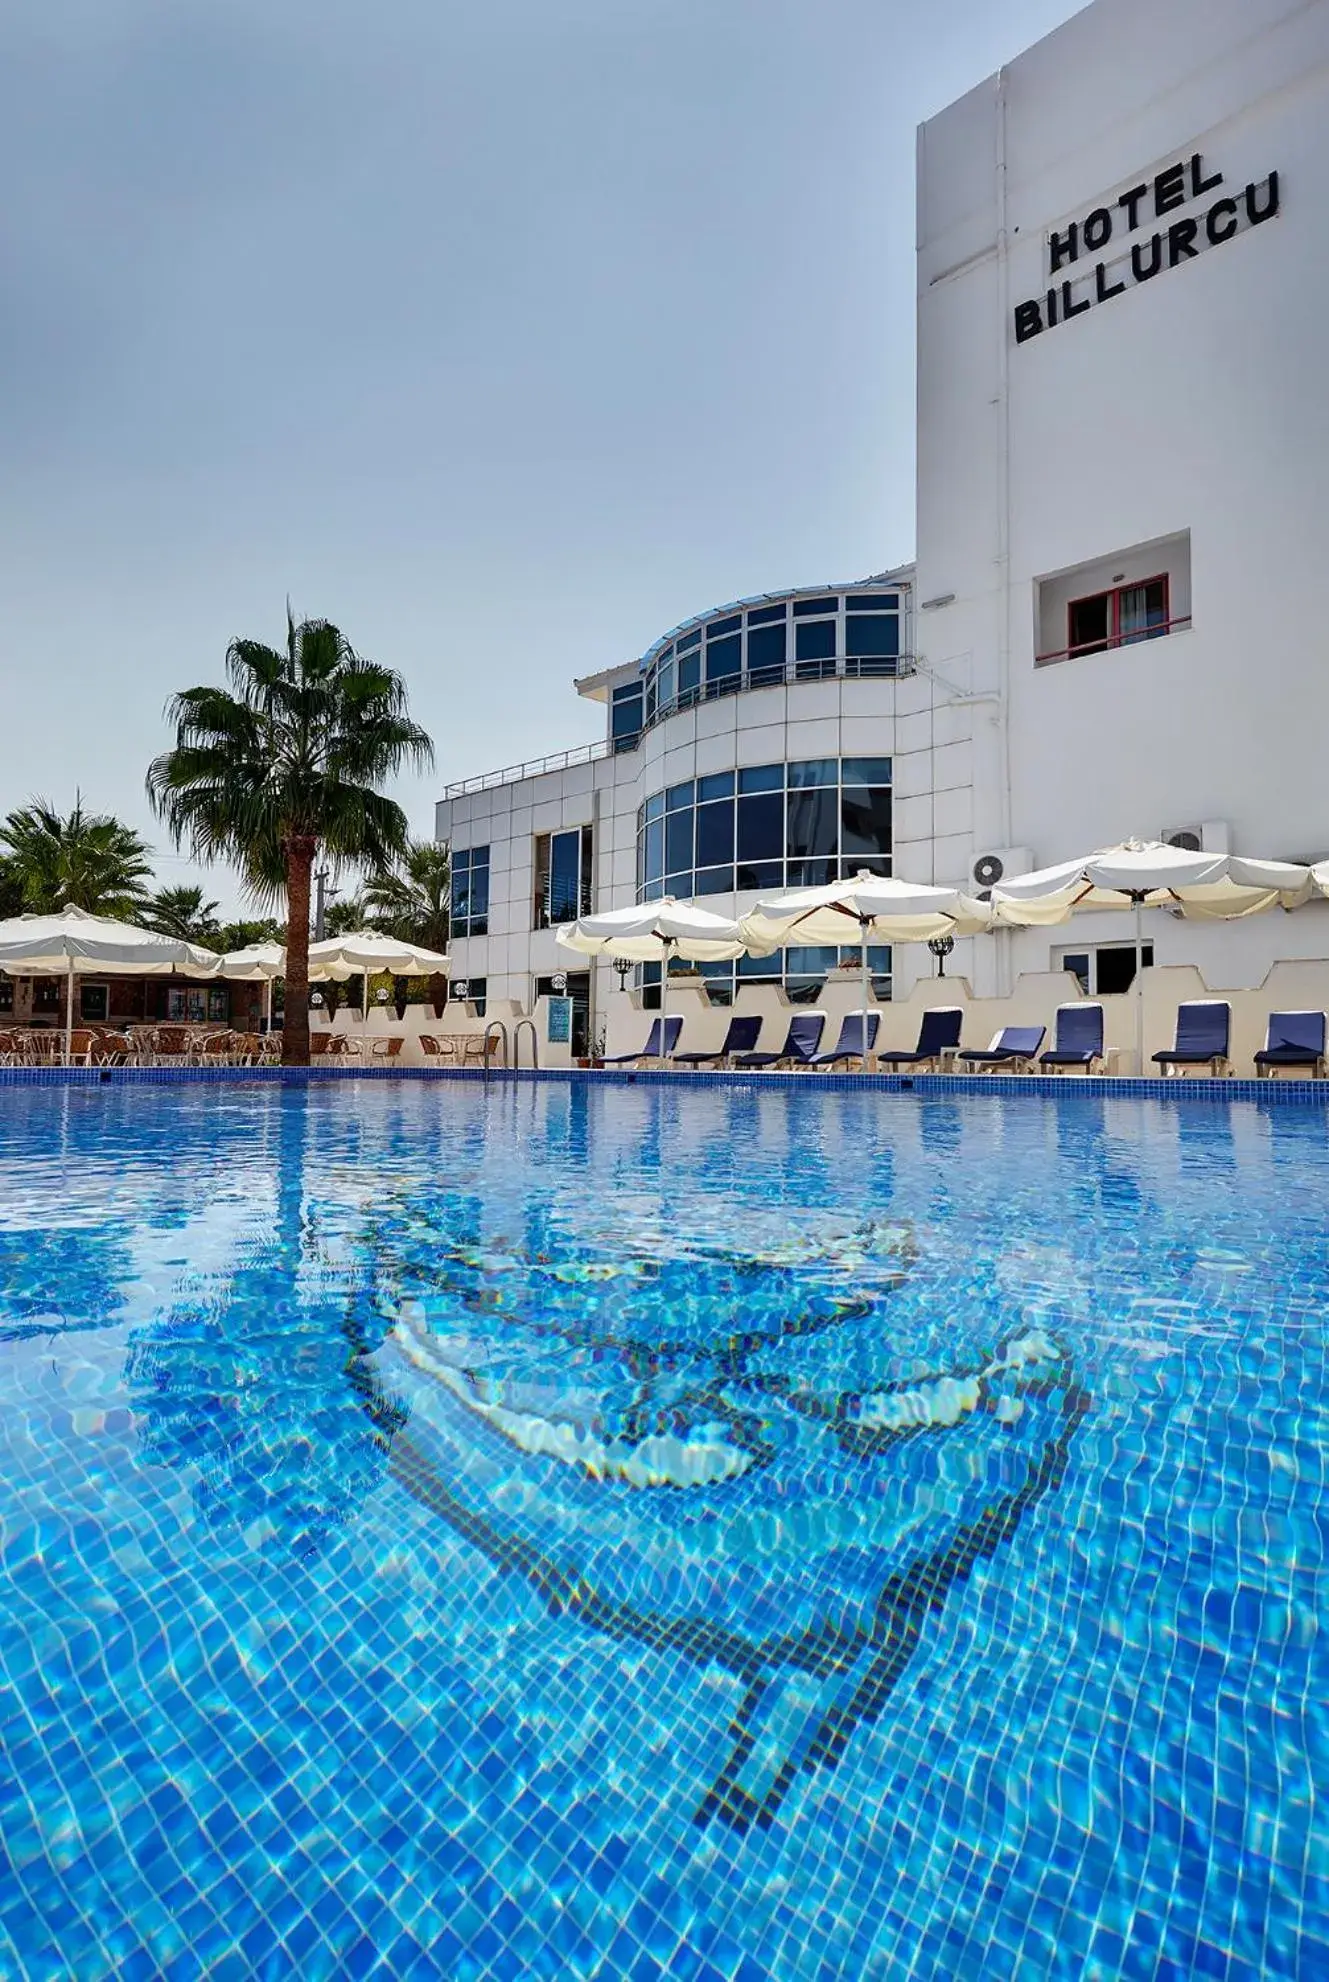 On site, Swimming Pool in Hotel Billurcu